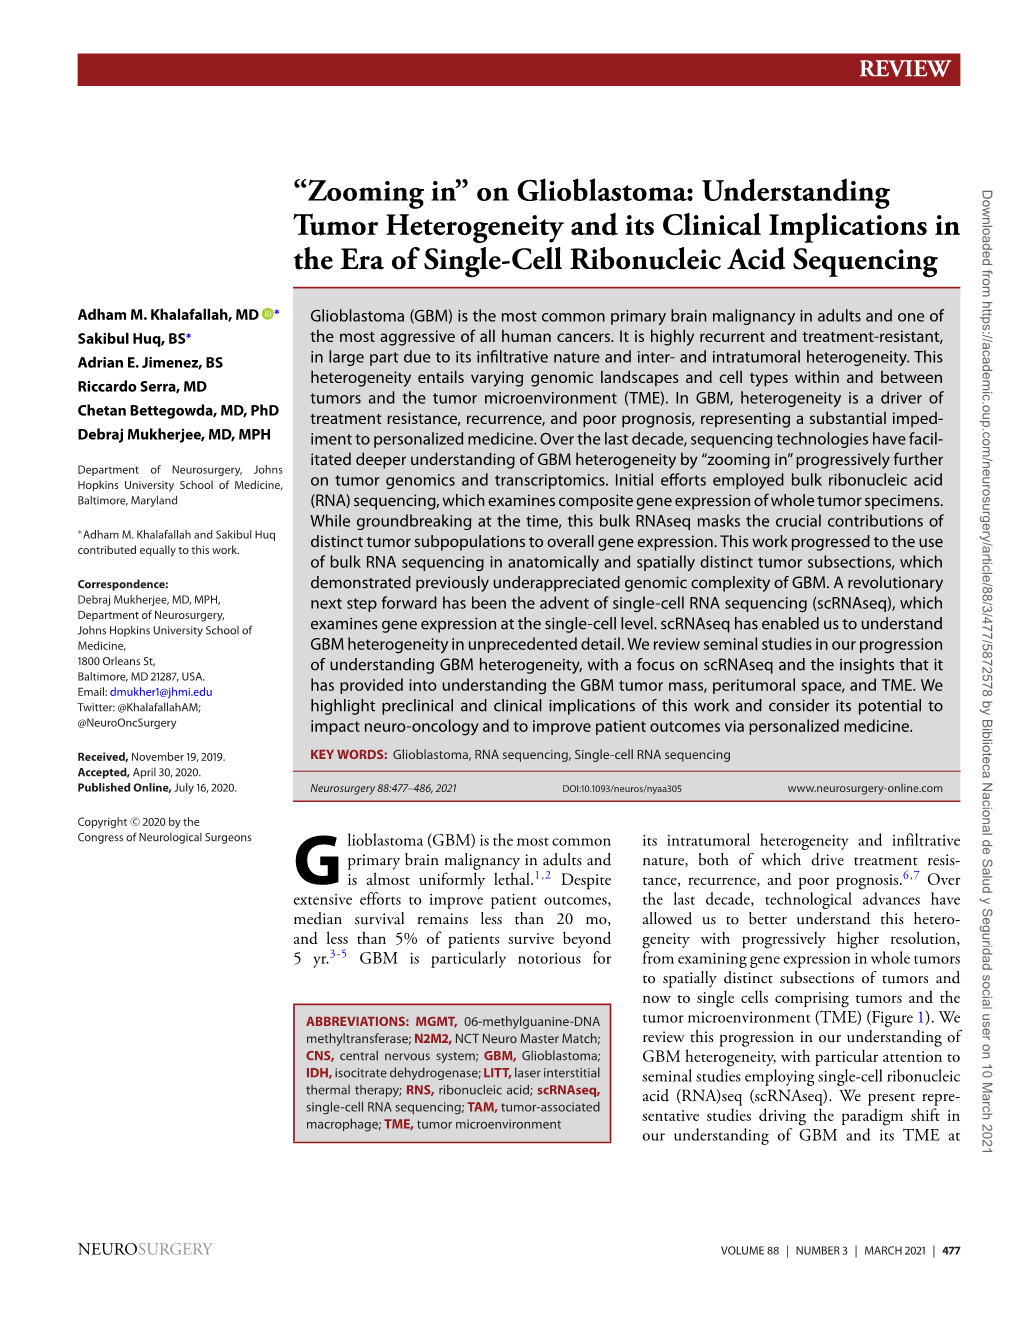 On Glioblastoma: Understanding Tumor Heterogeneity